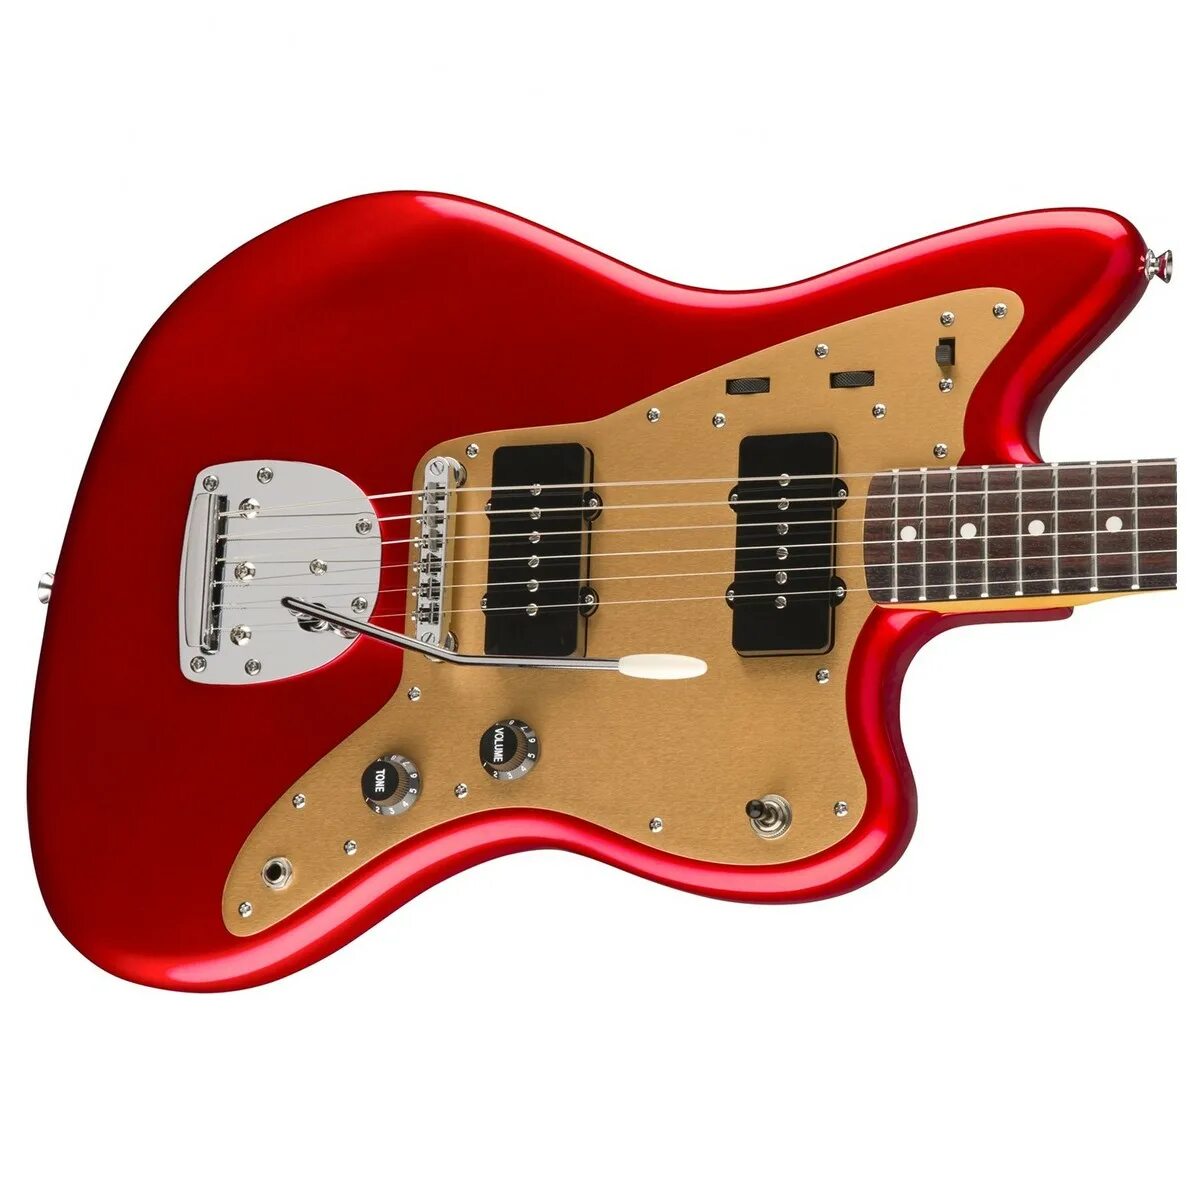 Fonber. Фендер скваер джазмастер. Гитара Squier by Fender красная. Гитара Jazzmaster. Fender Jazzmaster гранатовый.